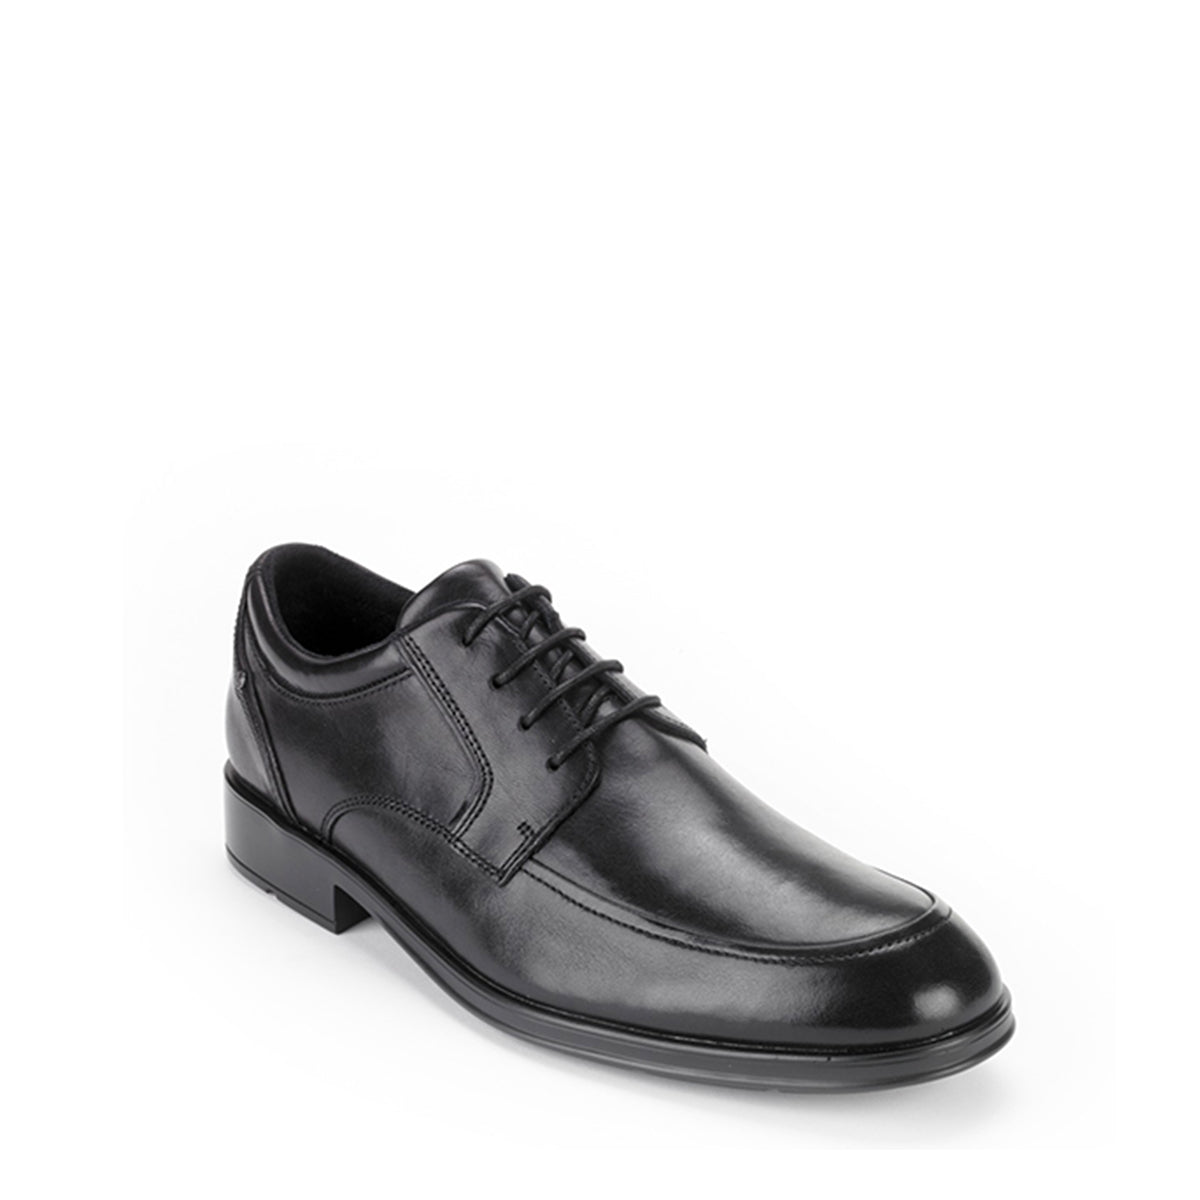 נעלי רוקפורט לגברים Rockport Schemerhorn Black